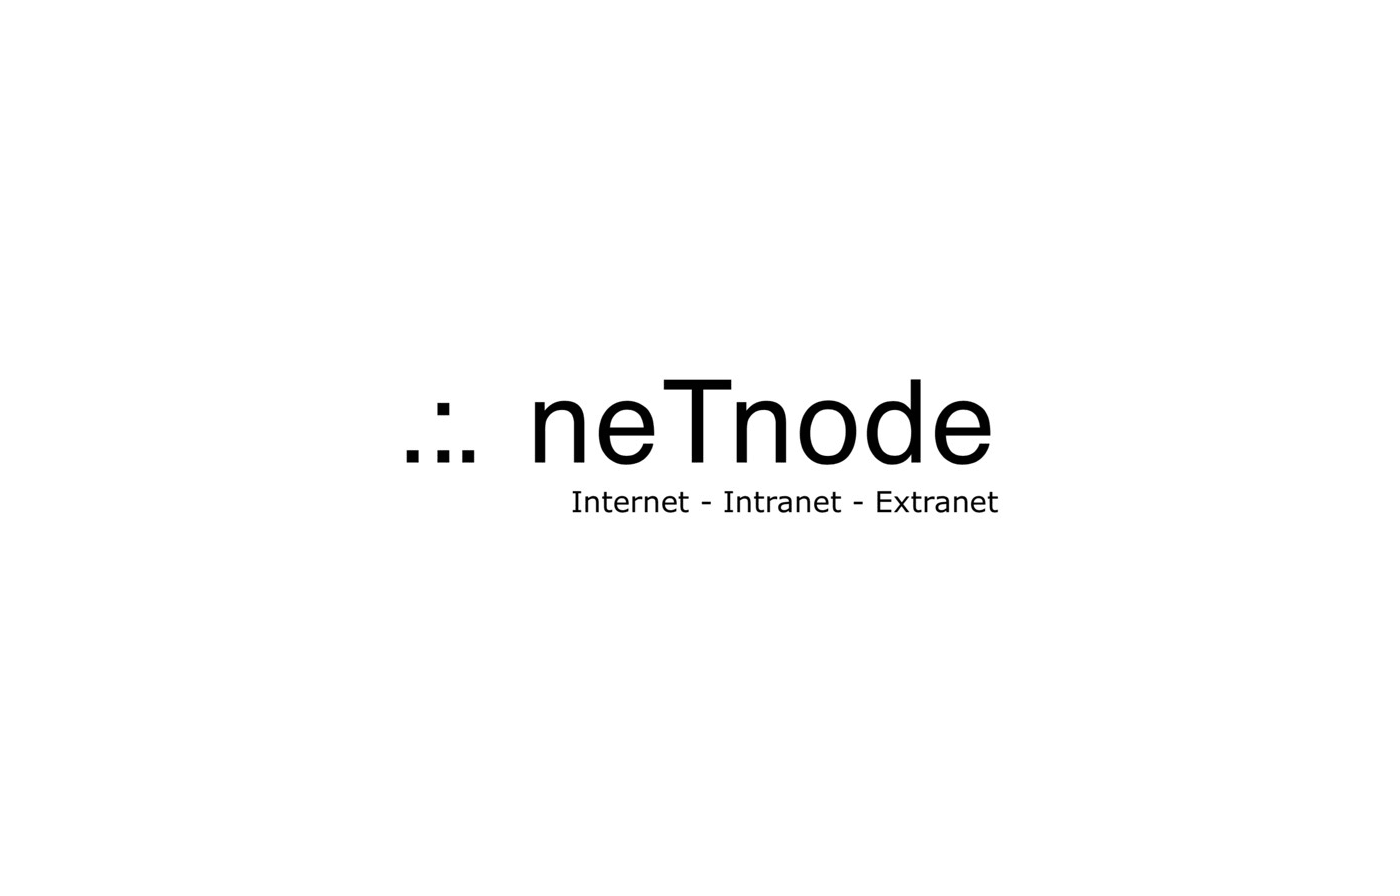 NETNODE Logo